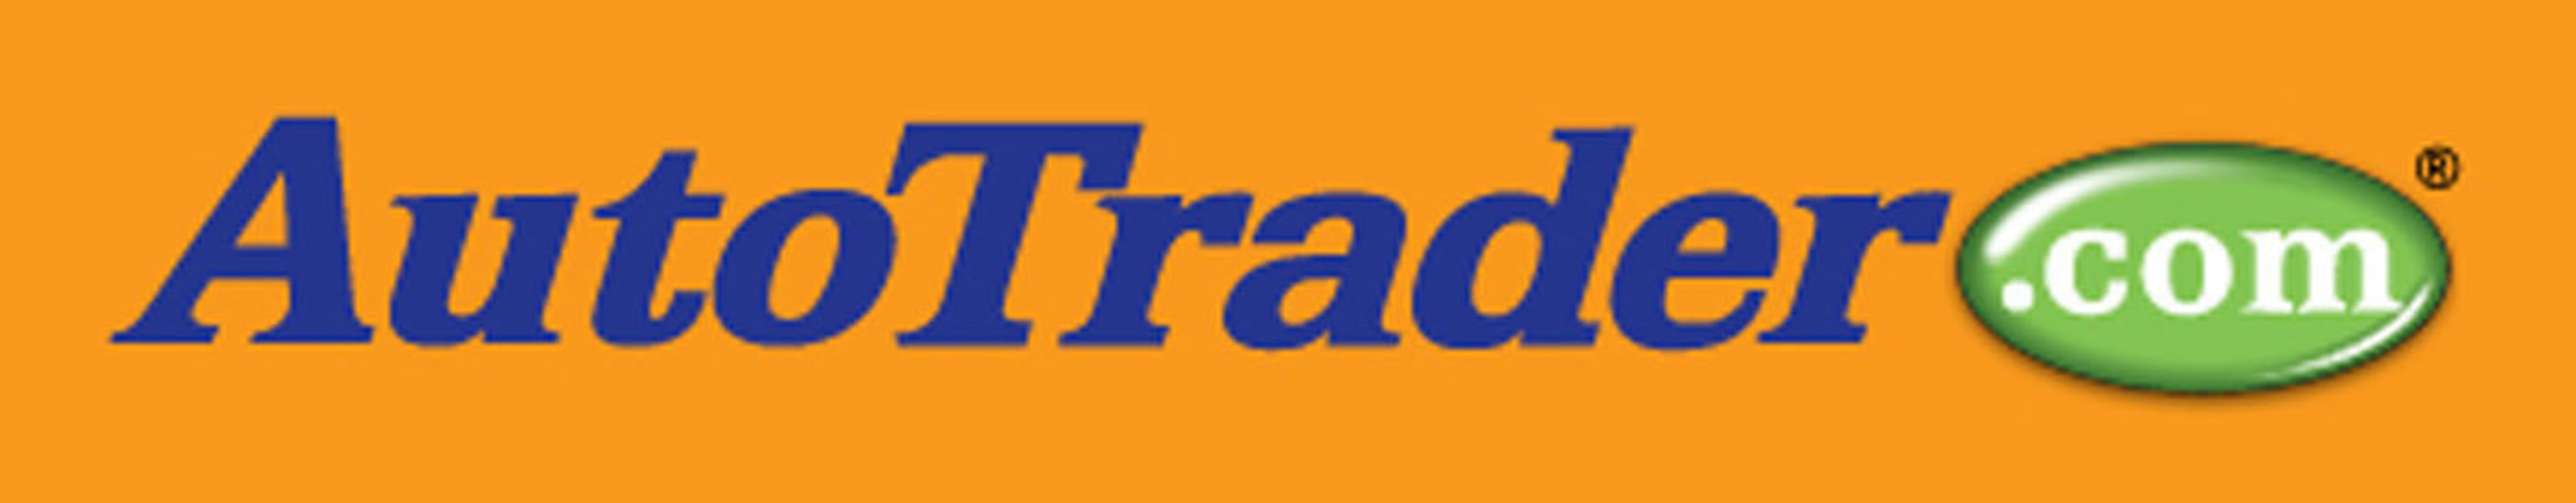 AutoTrader.com logo